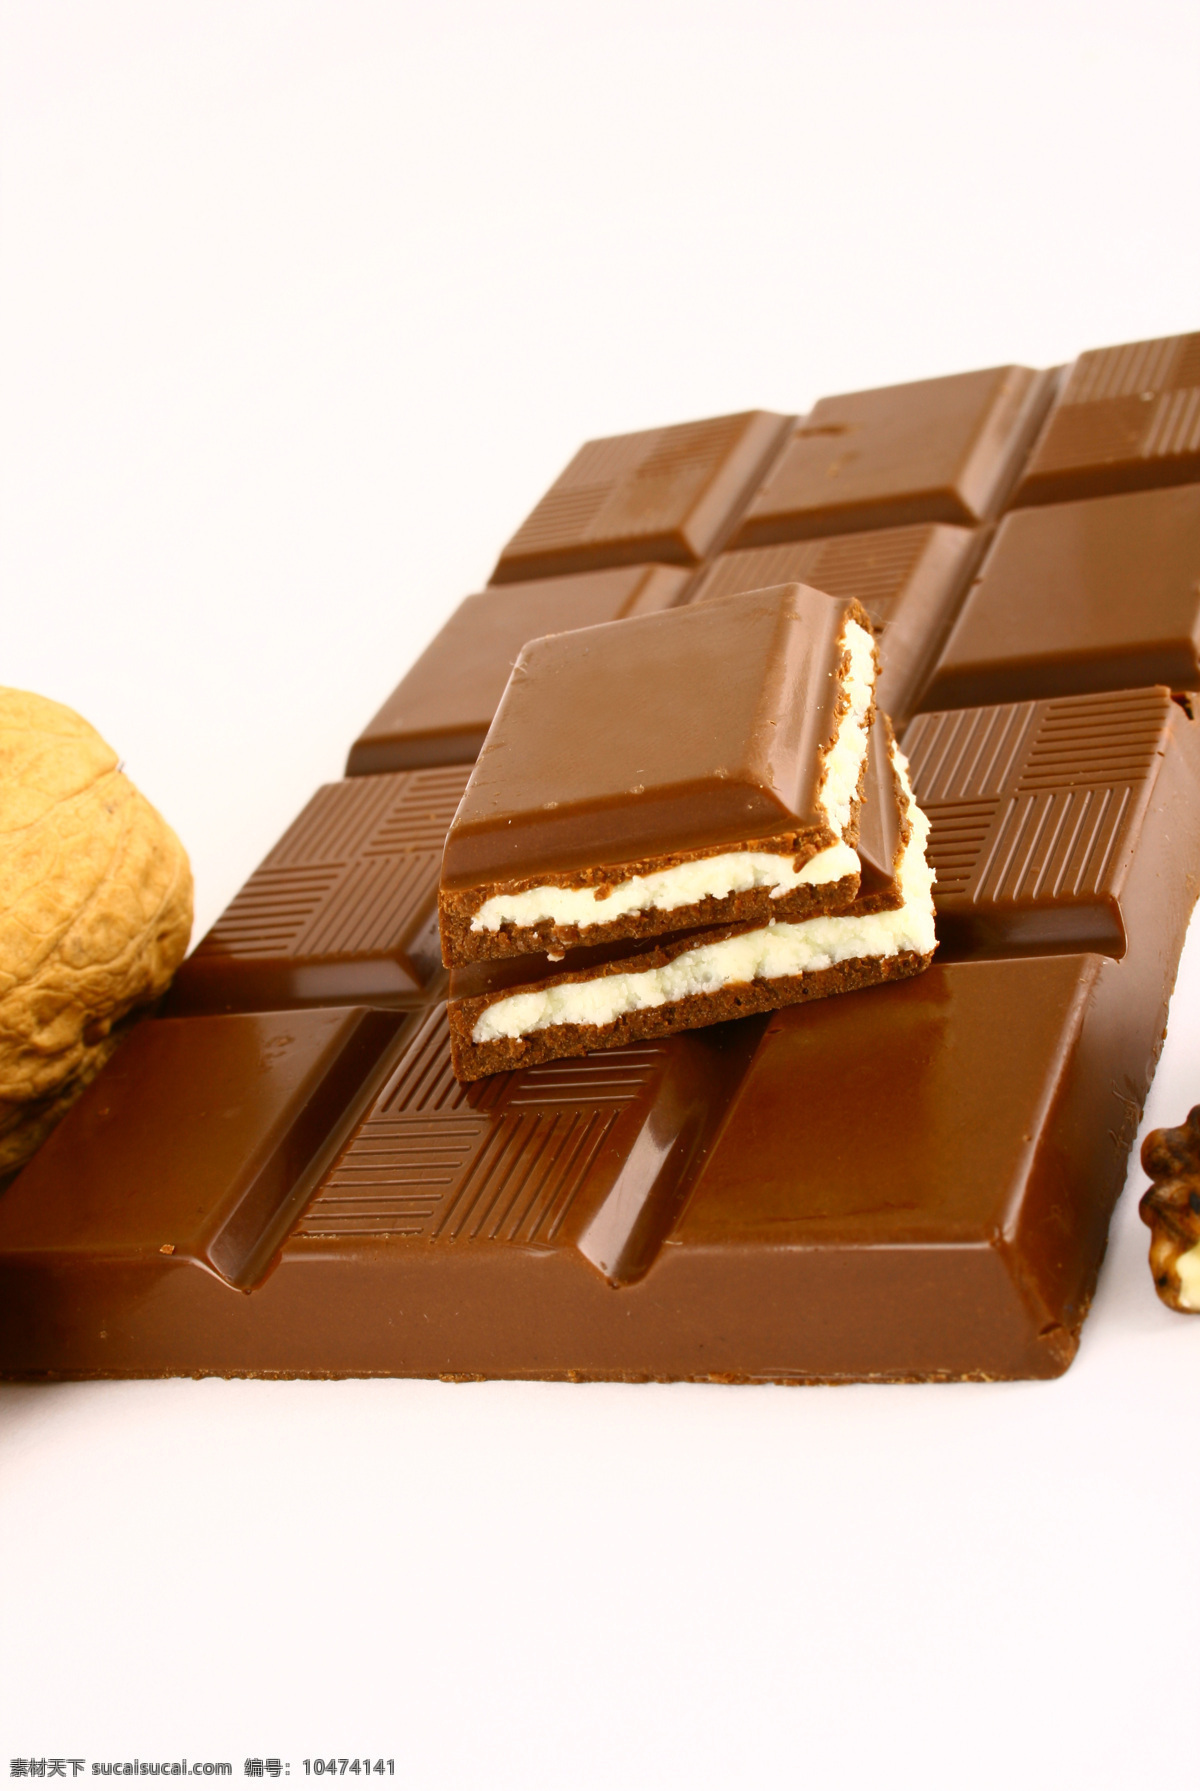 食物 甜食 甜品 巧克力 巧克力口味 精致 精美 夹心巧克力 外国美食 餐饮美食 白色